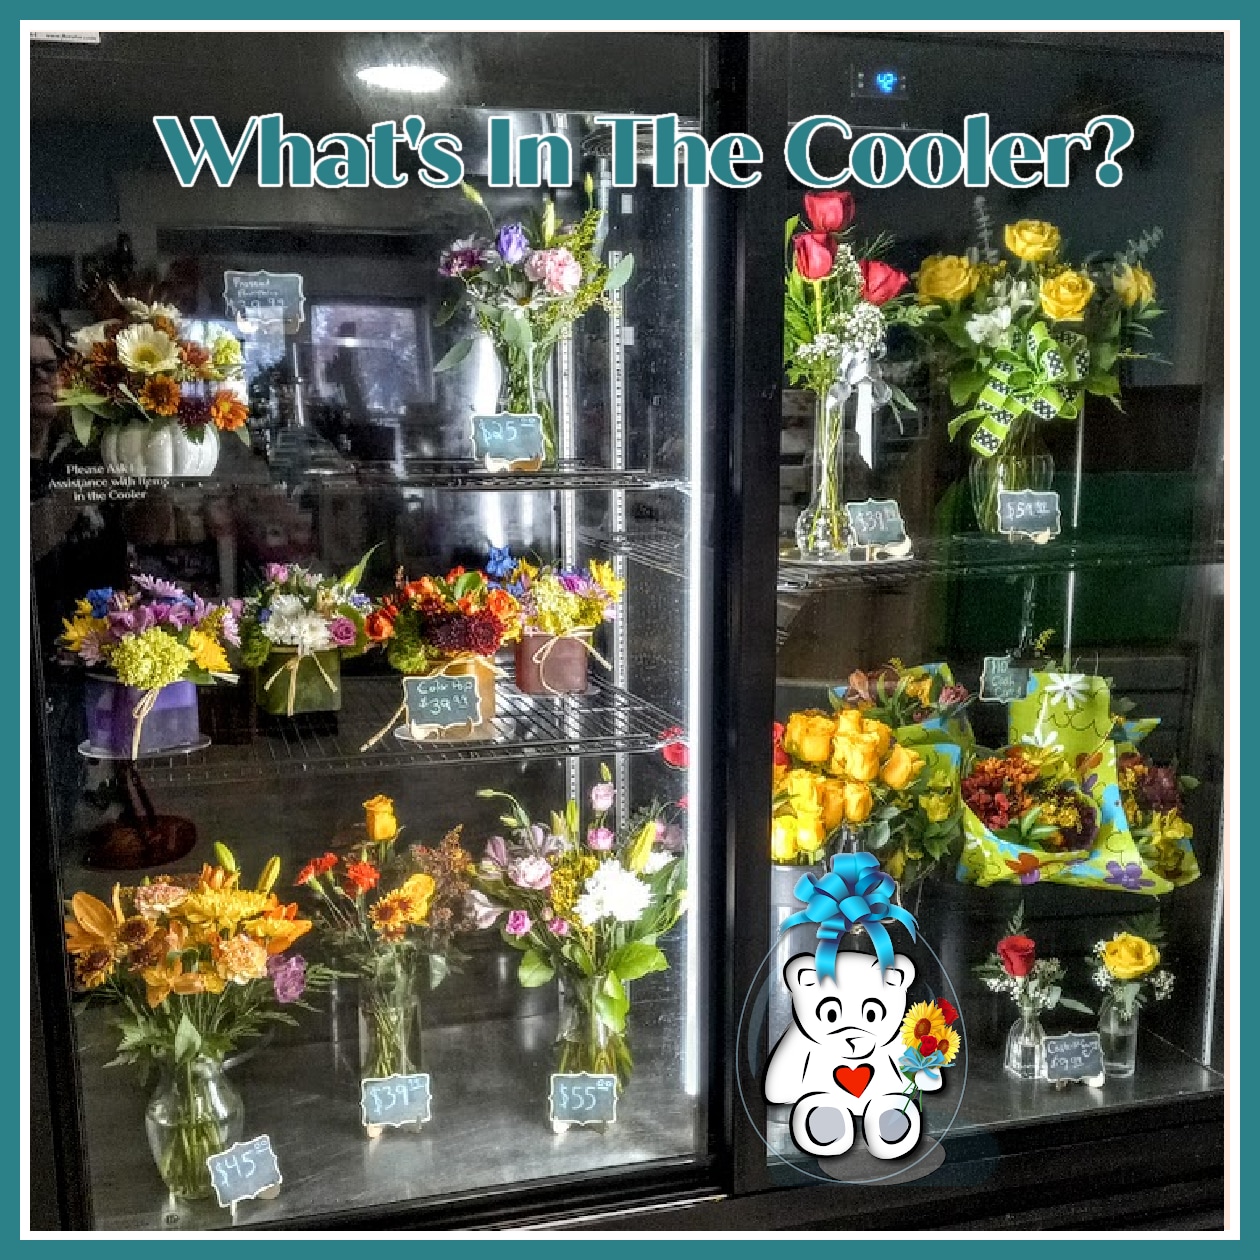 Flower arrangements in the cooler